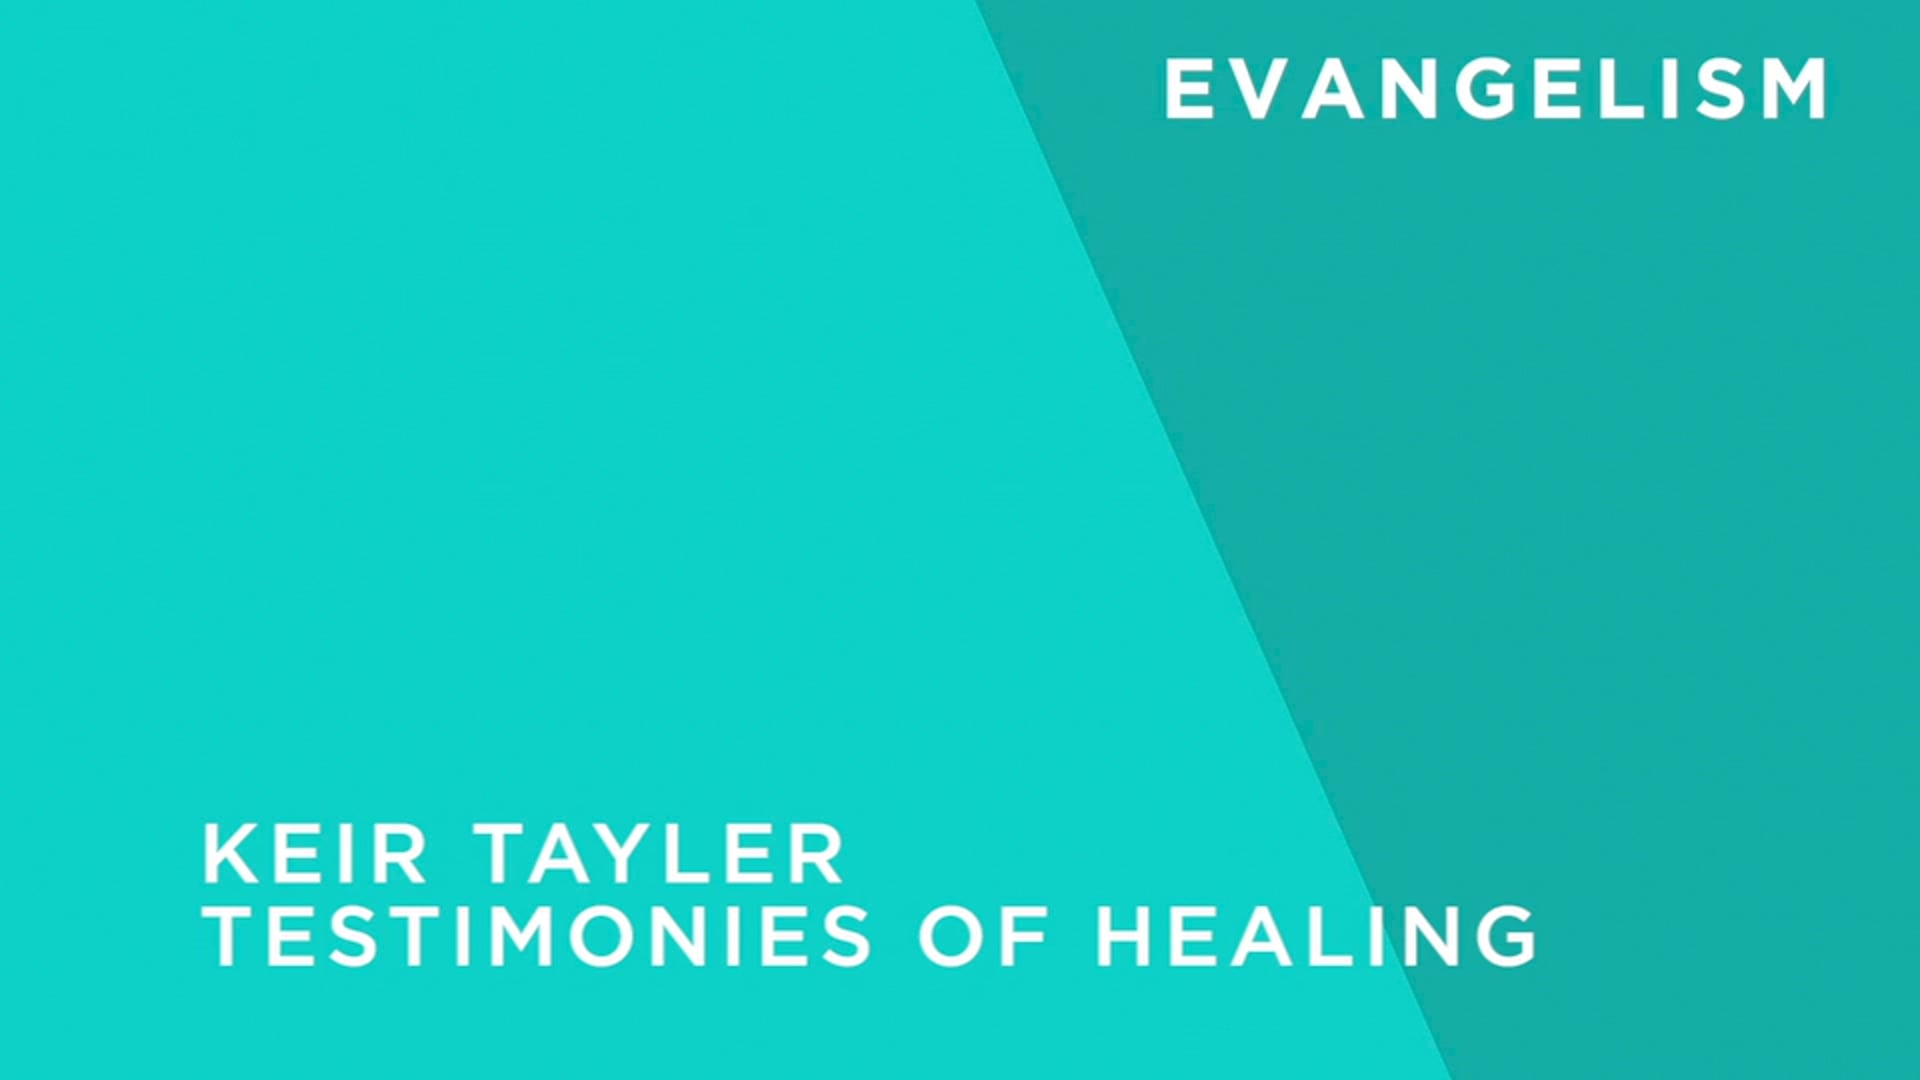 Healing Testimonies